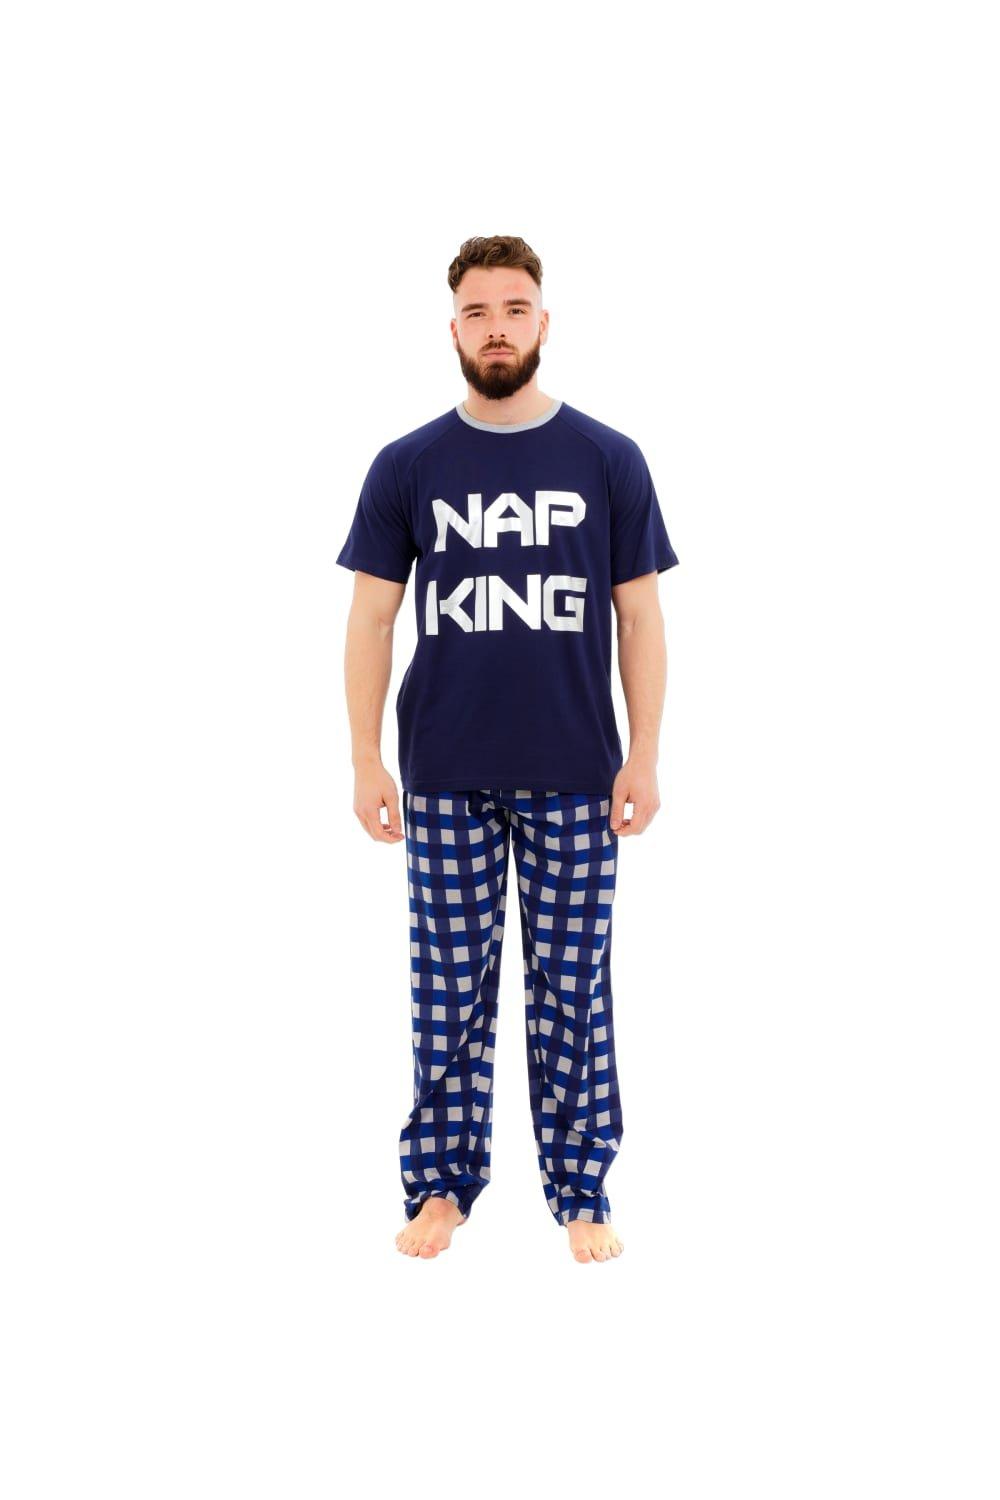 Nap King Pyjamas